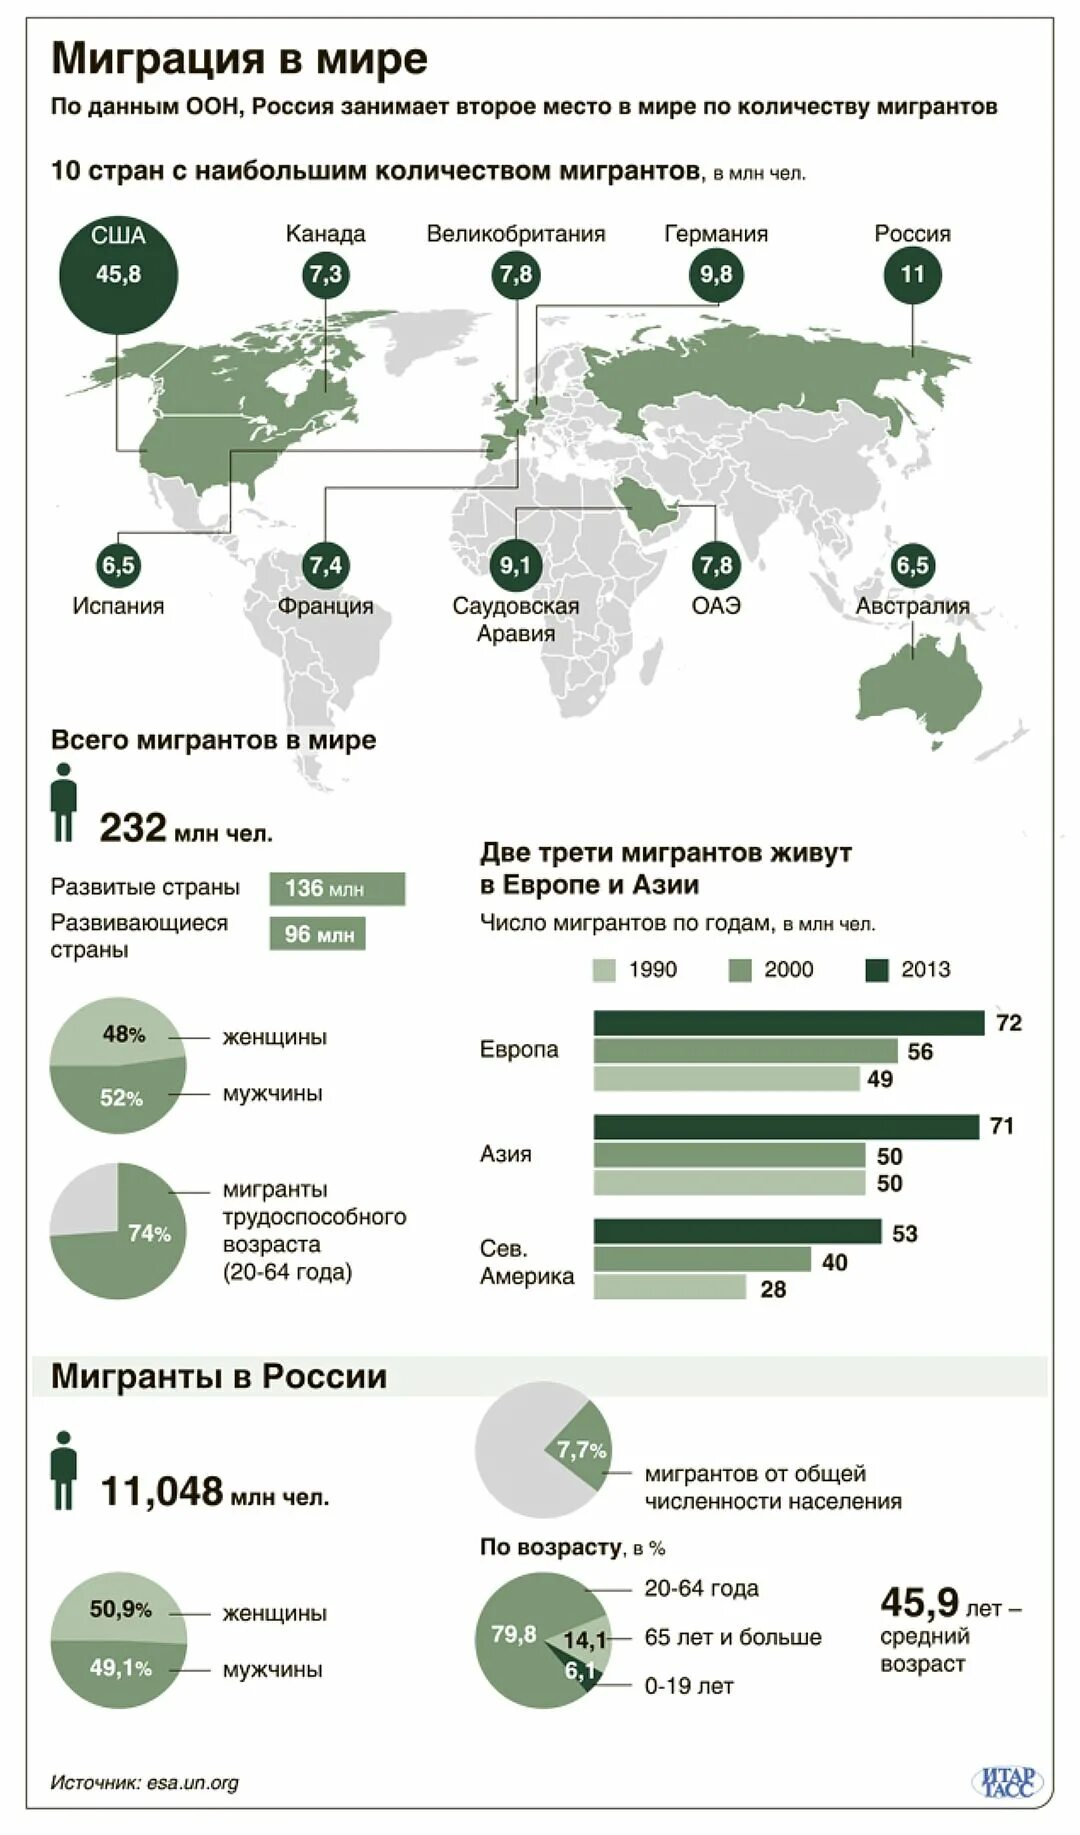 Наиболее привлекательные регионы россии для мигрантов. Статистика миграции в мире 2020. Миграция населения в России 2020. Международная миграция населения России по годам. Трудовая миграция статистика в мире.